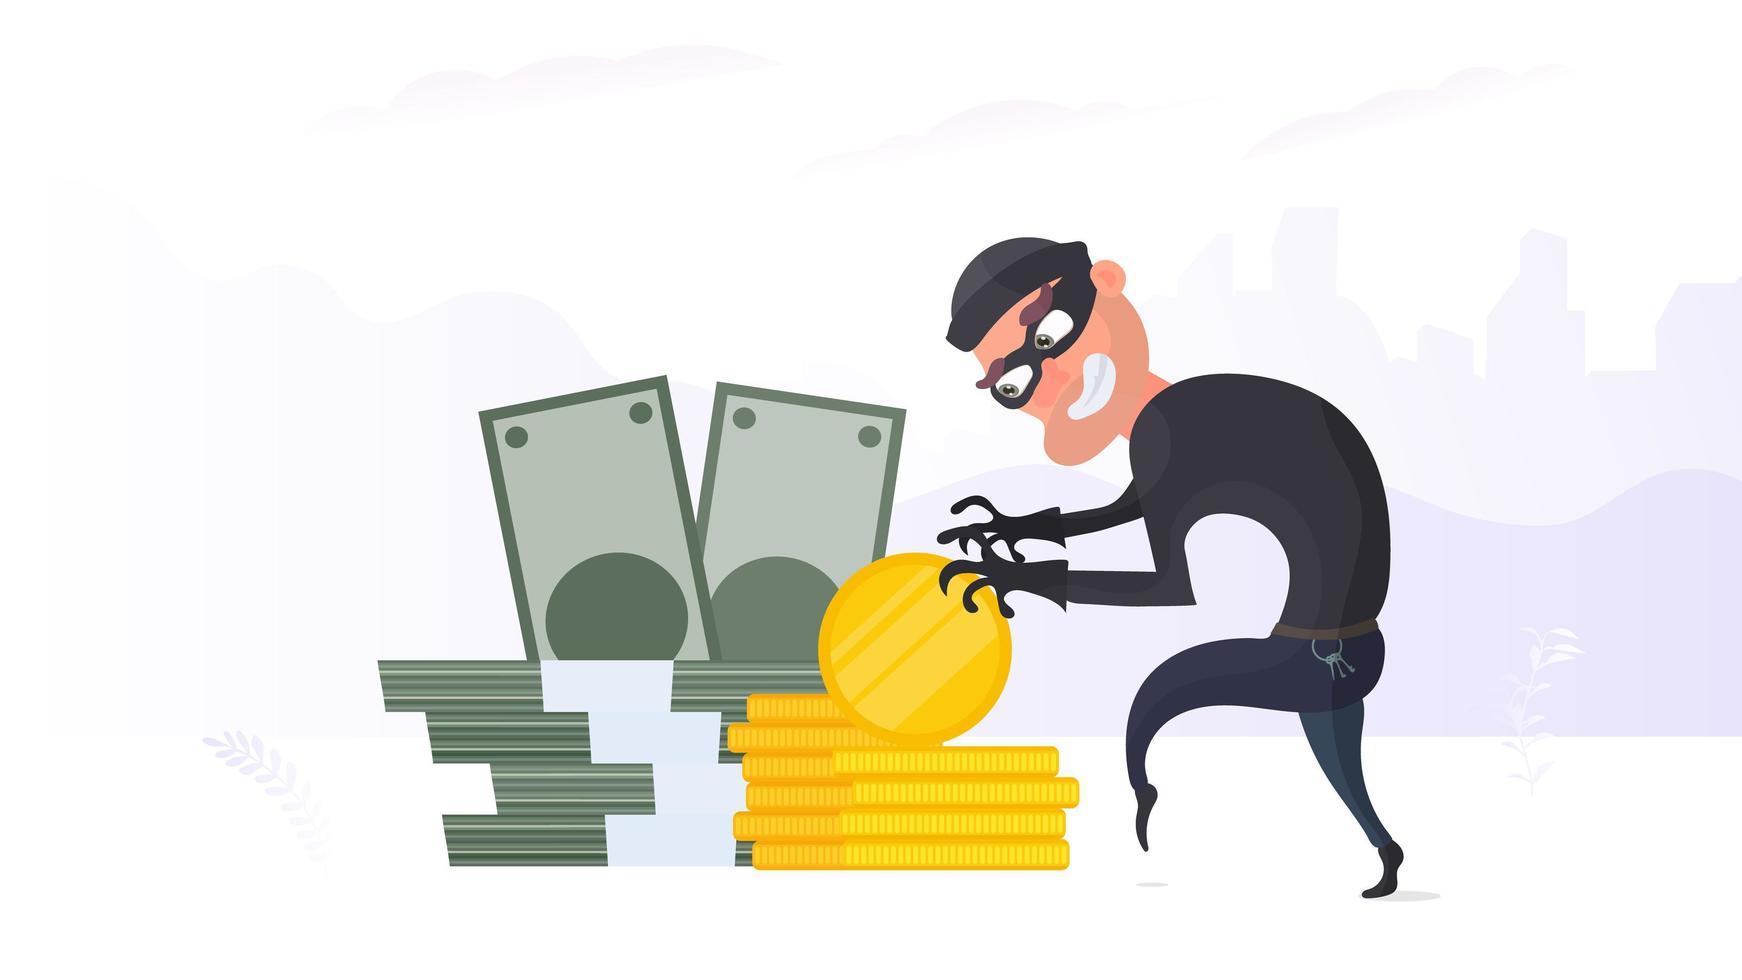 o ladrão rouba dinheiro. o criminoso rouba moedas de ouro. conceito de segurança de roubo e finanças. estilo simples, vetor. vetor